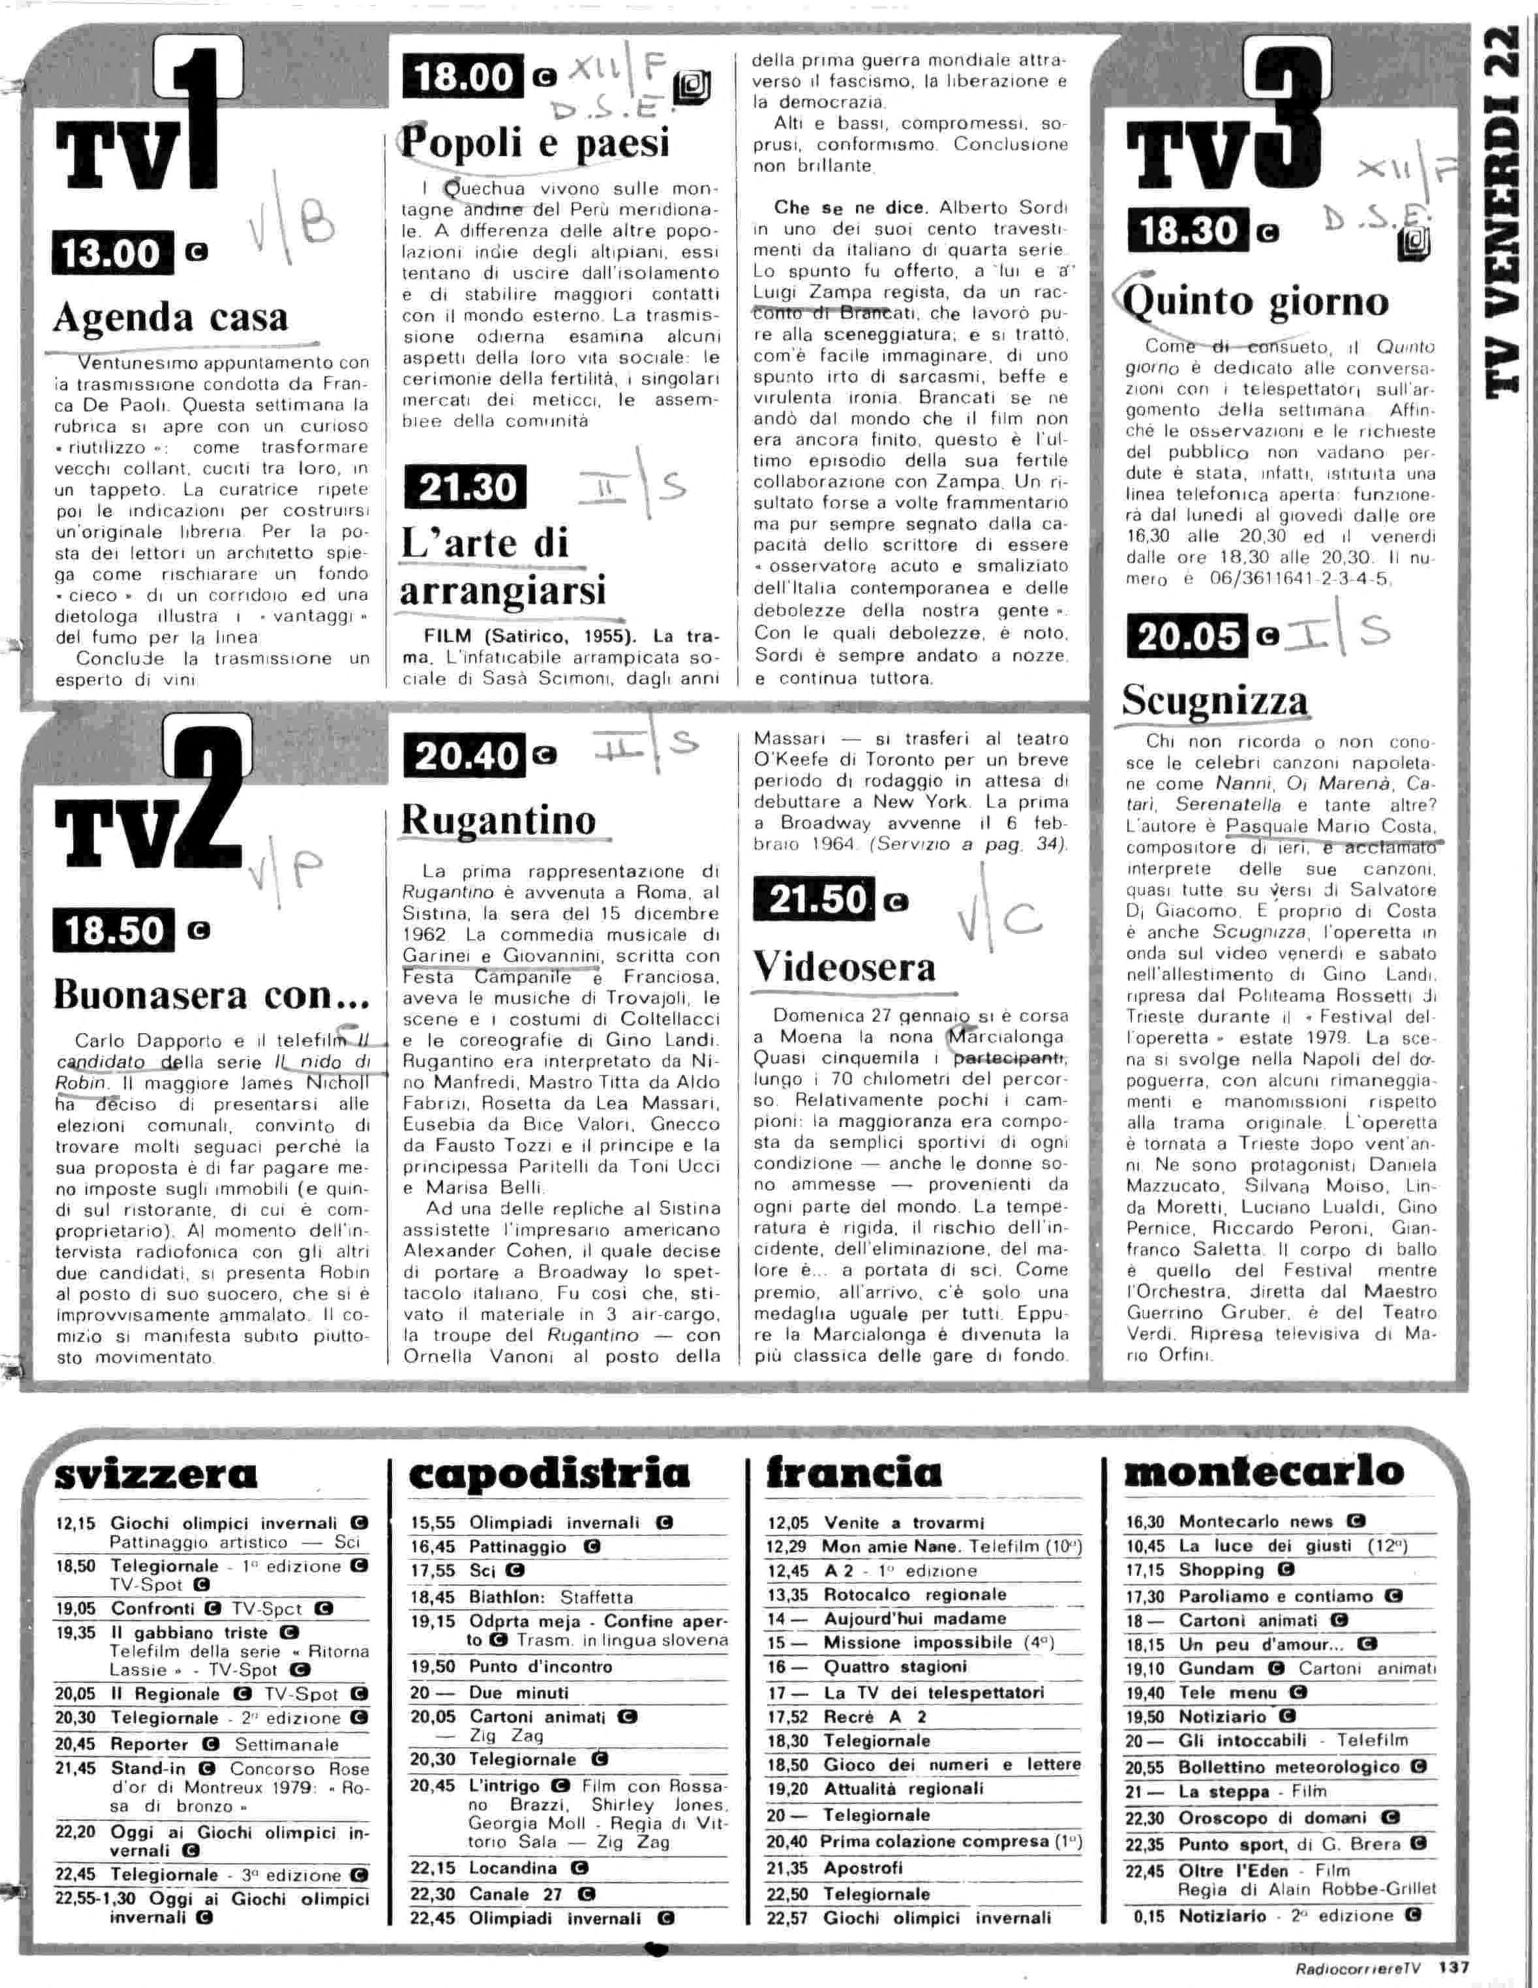 RC-1980-08_0136.jp2&id=Radiocorriere-198